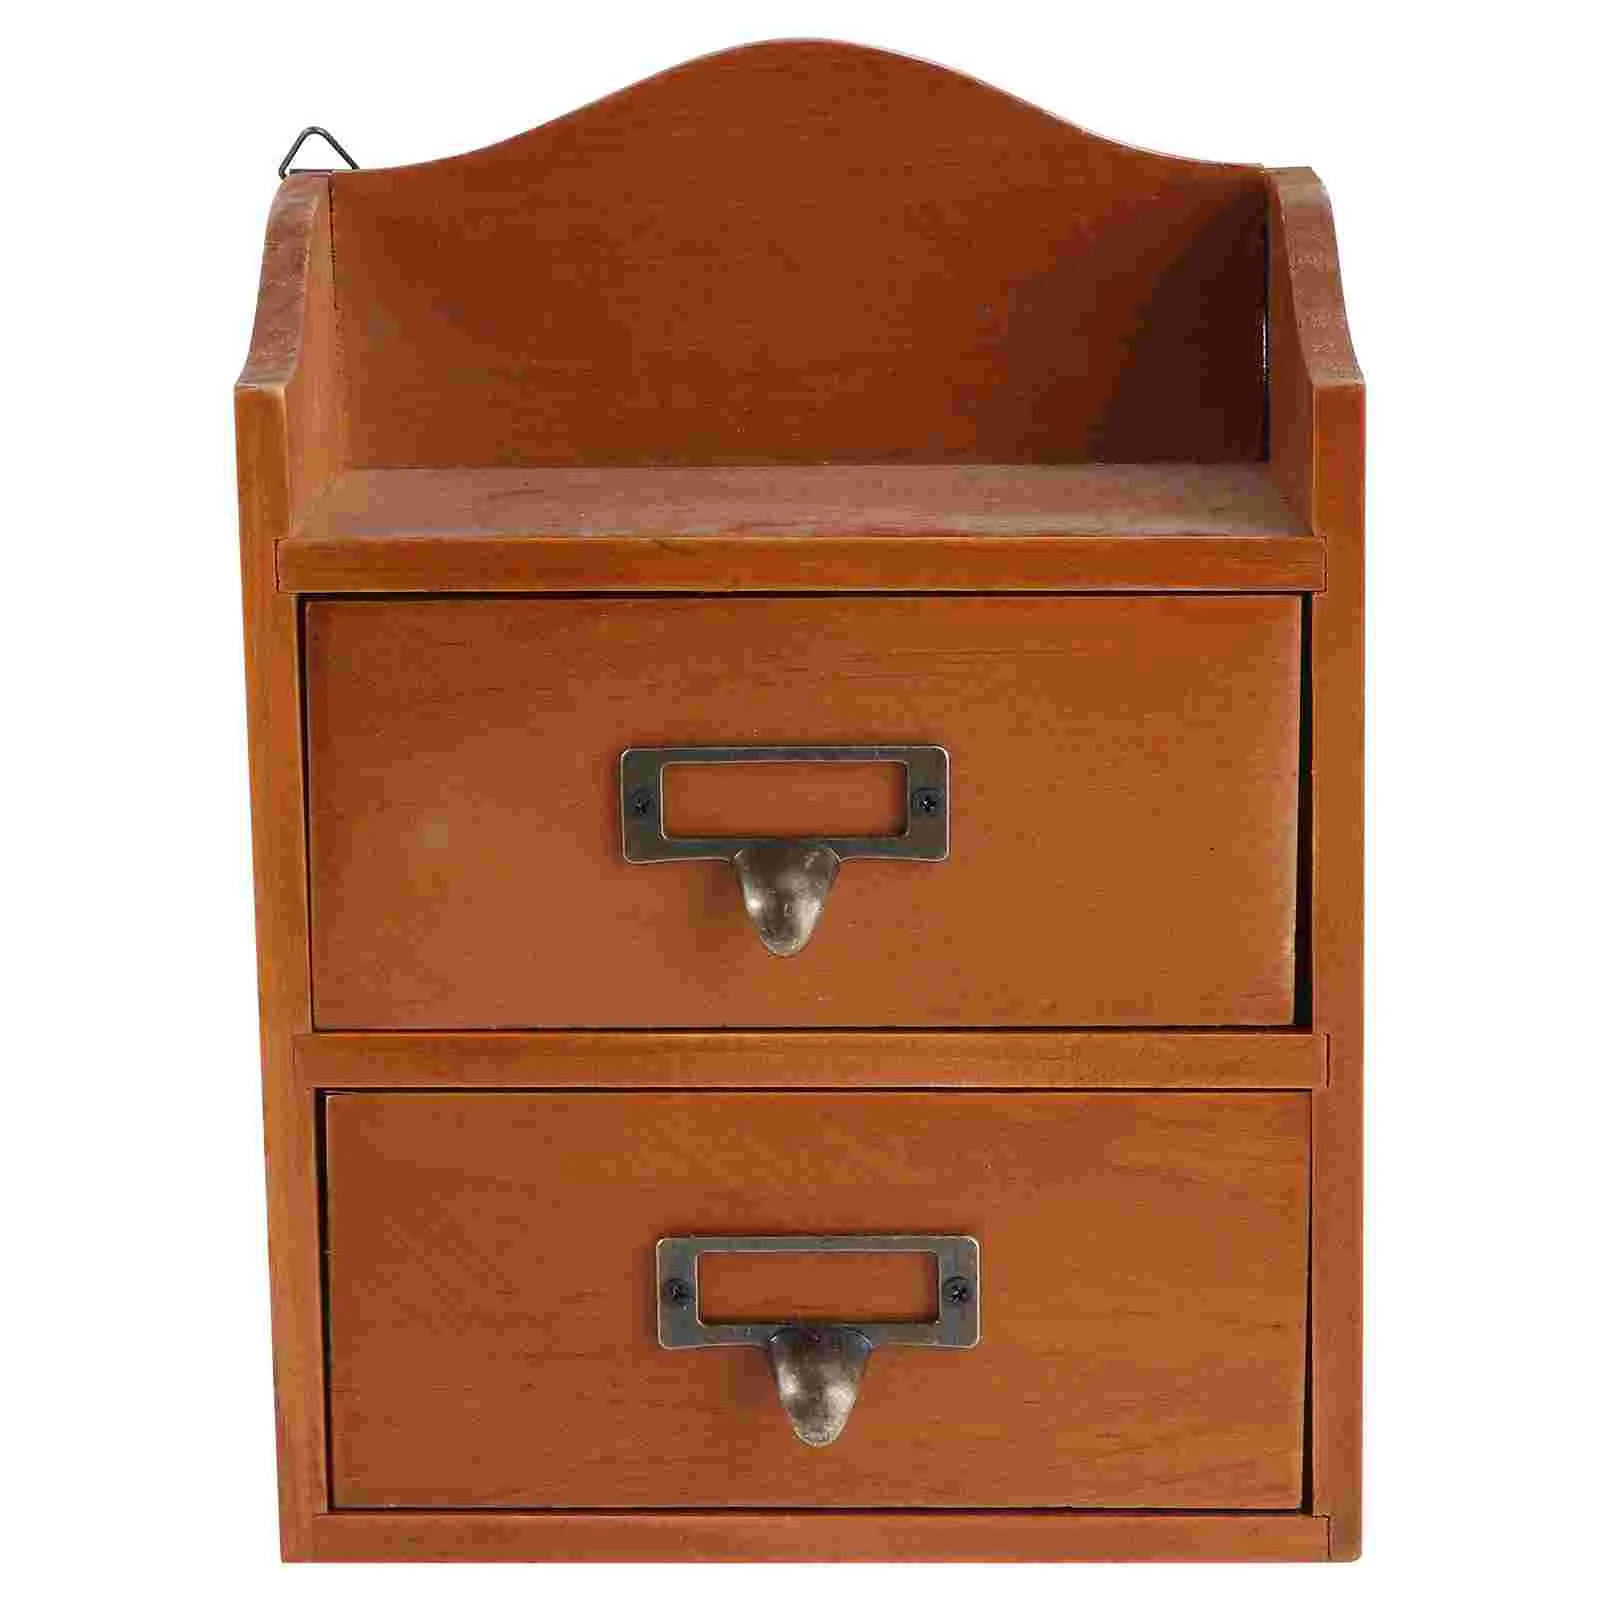 

Ящик для хранения настольного стола, деревянный органайзер для косметики, деревянный декоративный контейнер-органайзер, настенная деревенская полка настольного типа